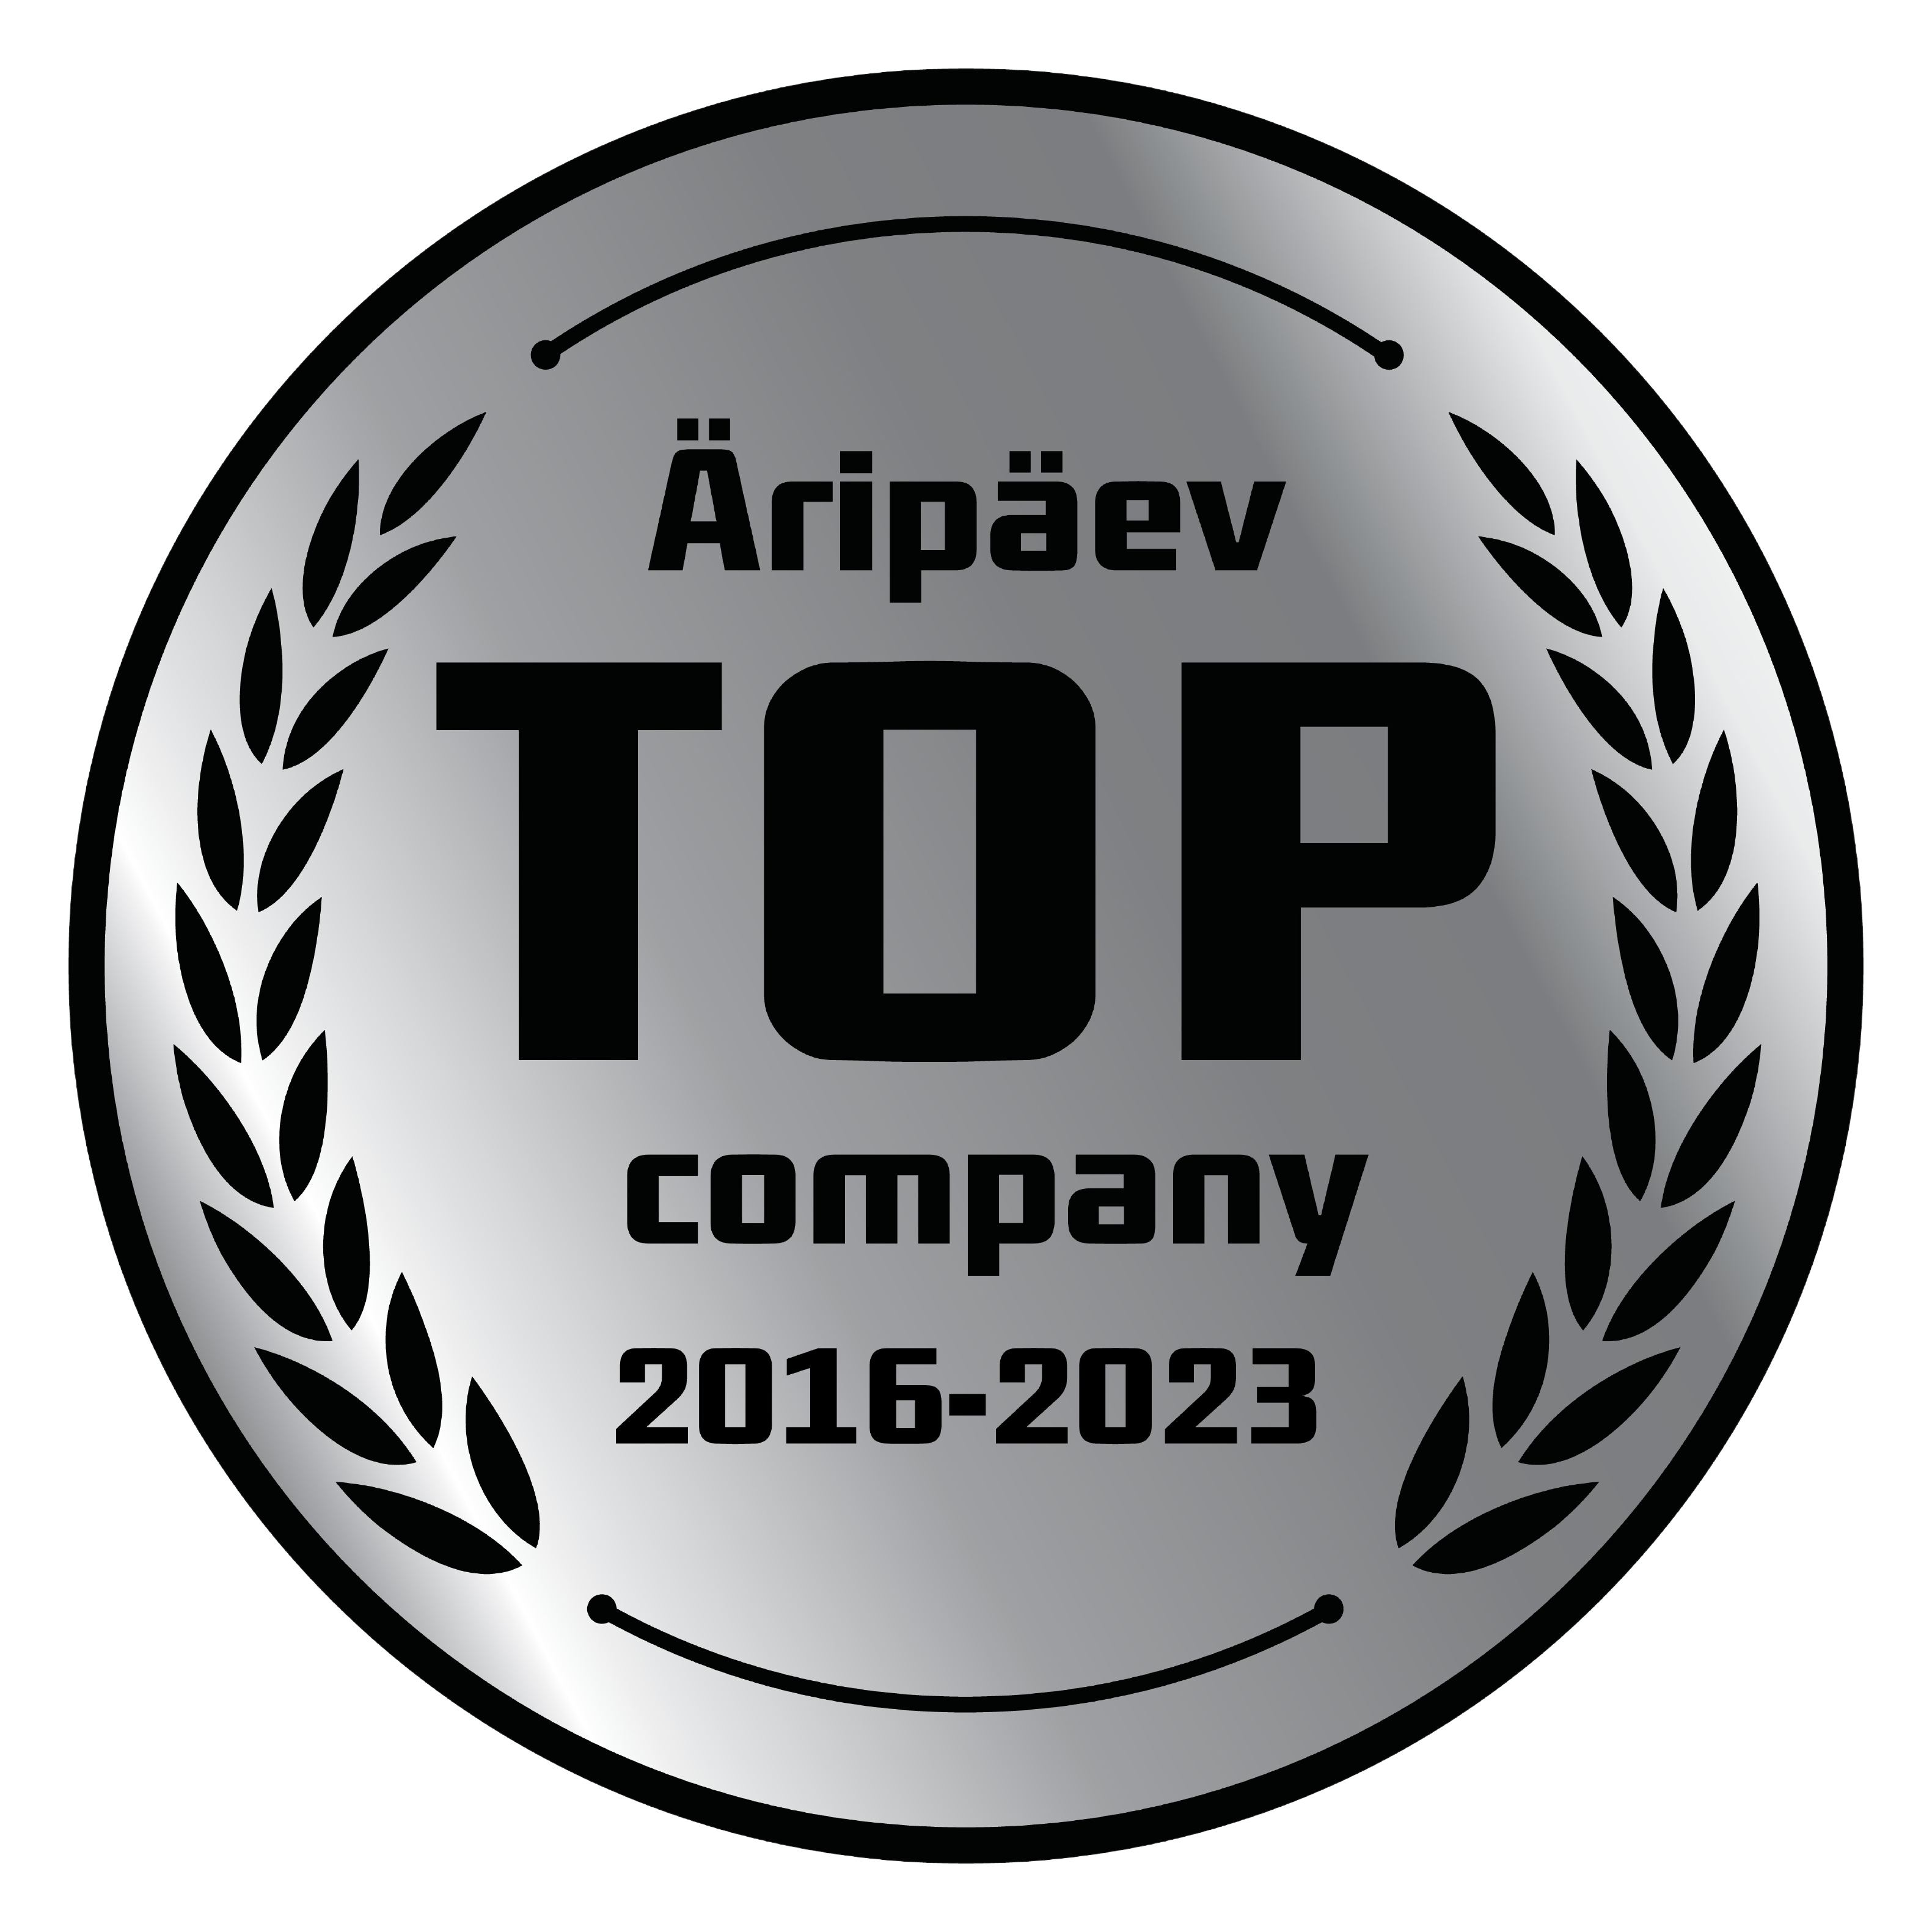 Äripäev TOP company 2016-2023 logo